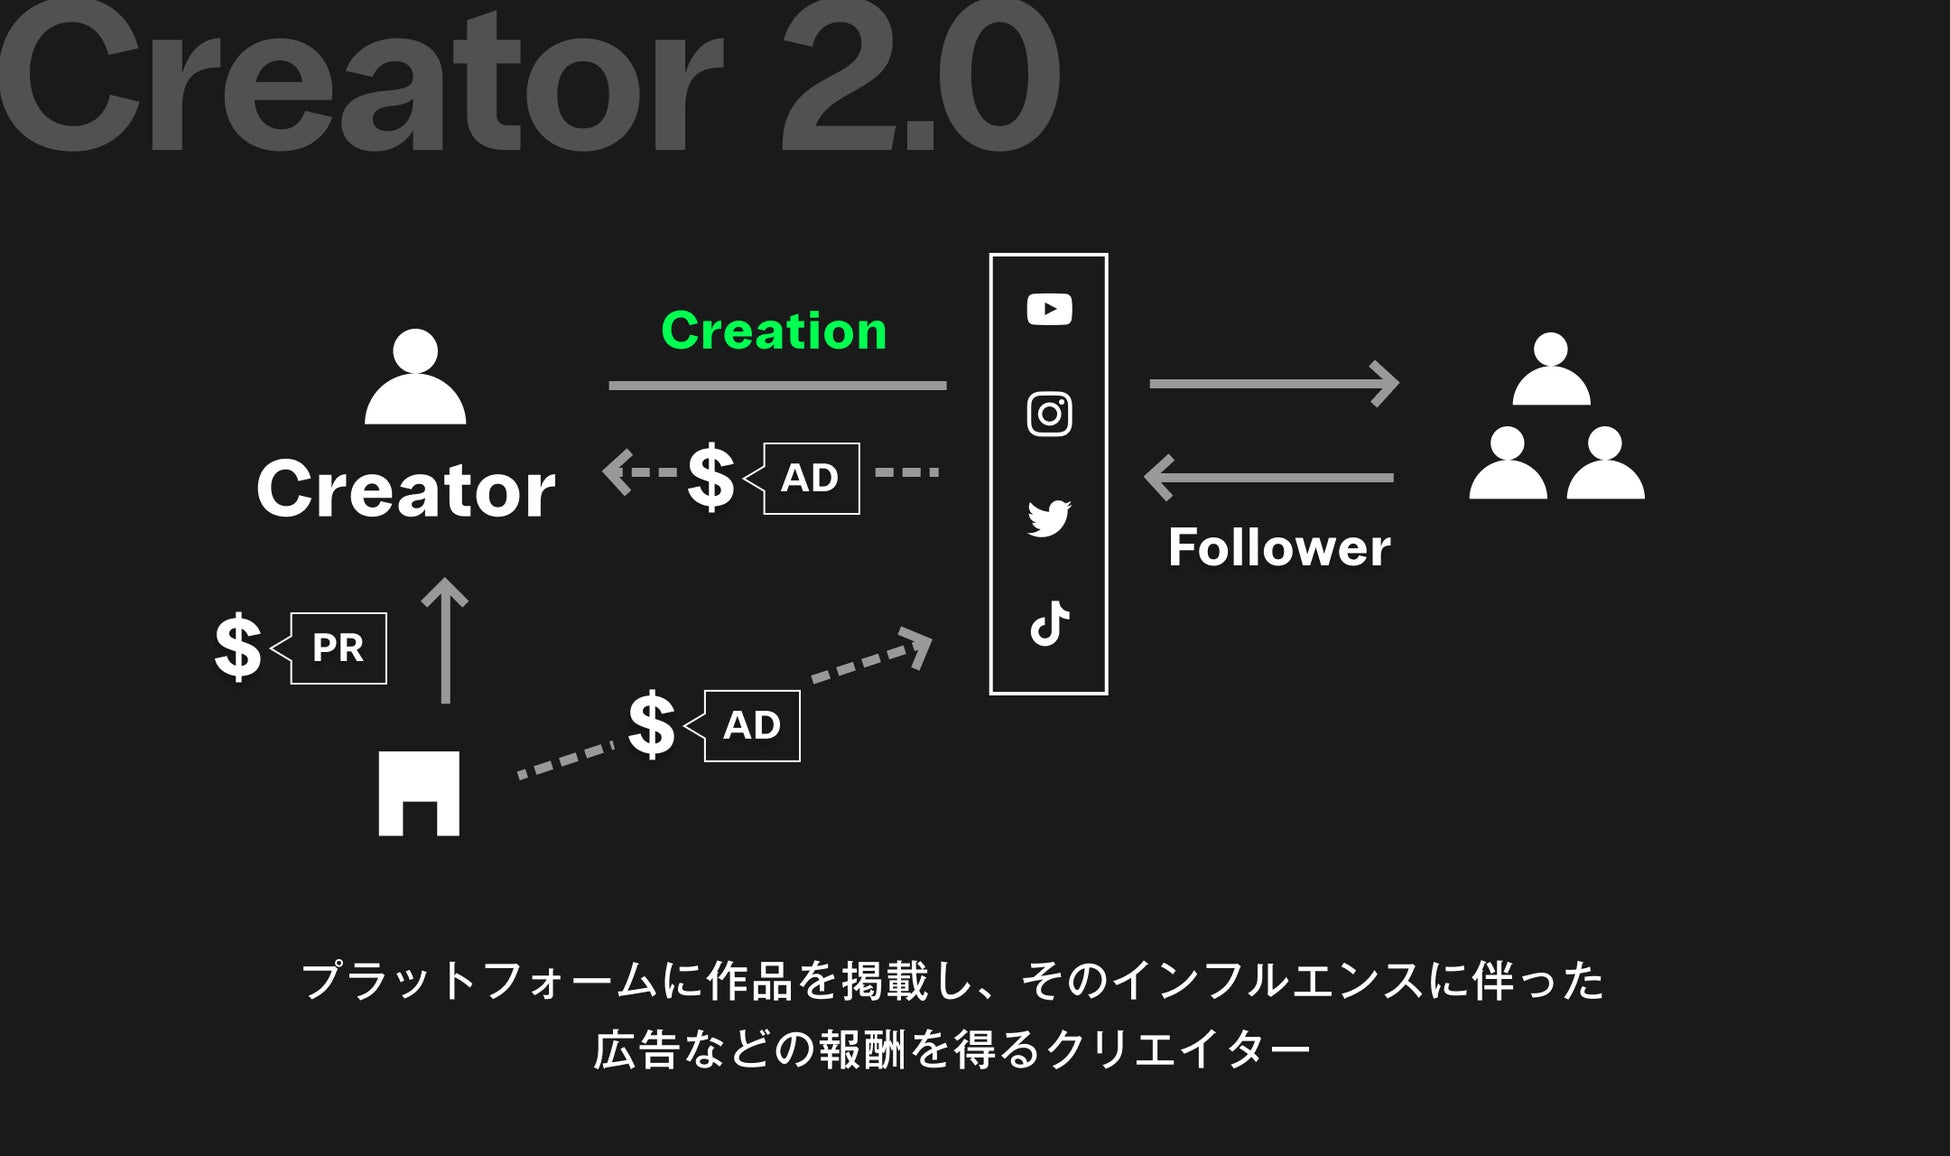 日本人史上7人目となる登録者数1000万人を達成した、YouTubeチャンネル『Nihongo Mantappu』と『OASIZ』がタッグを発表！ “クリエイター3.0” 構想を加速のサブ画像3